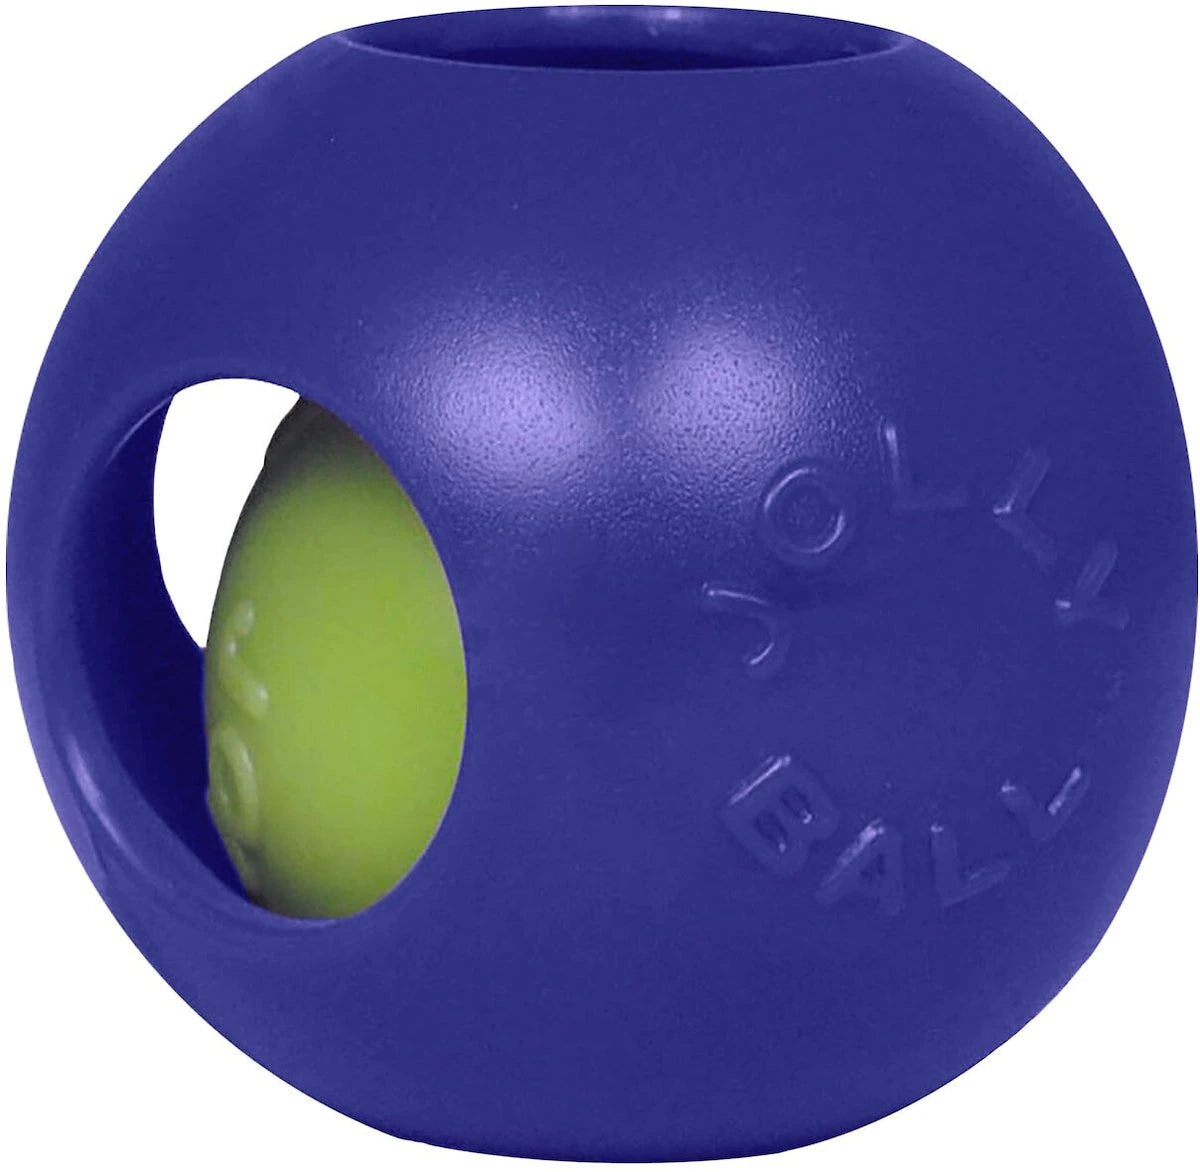 6 inch jolly ball teaser ball